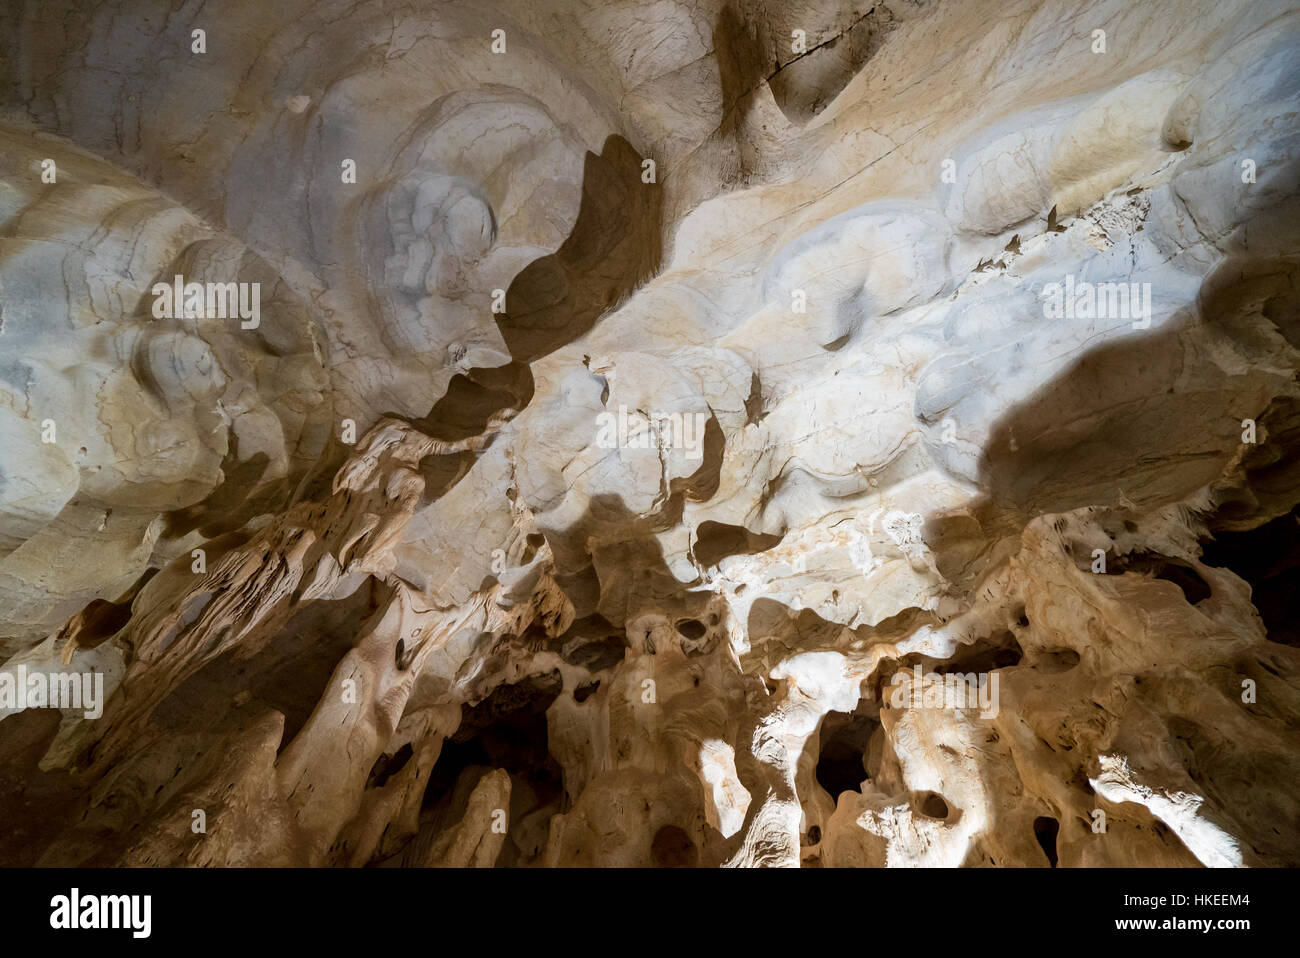 Grotte du chameau, sous les montagnes de Zegzel (camel cave east morocco) Stock Photo